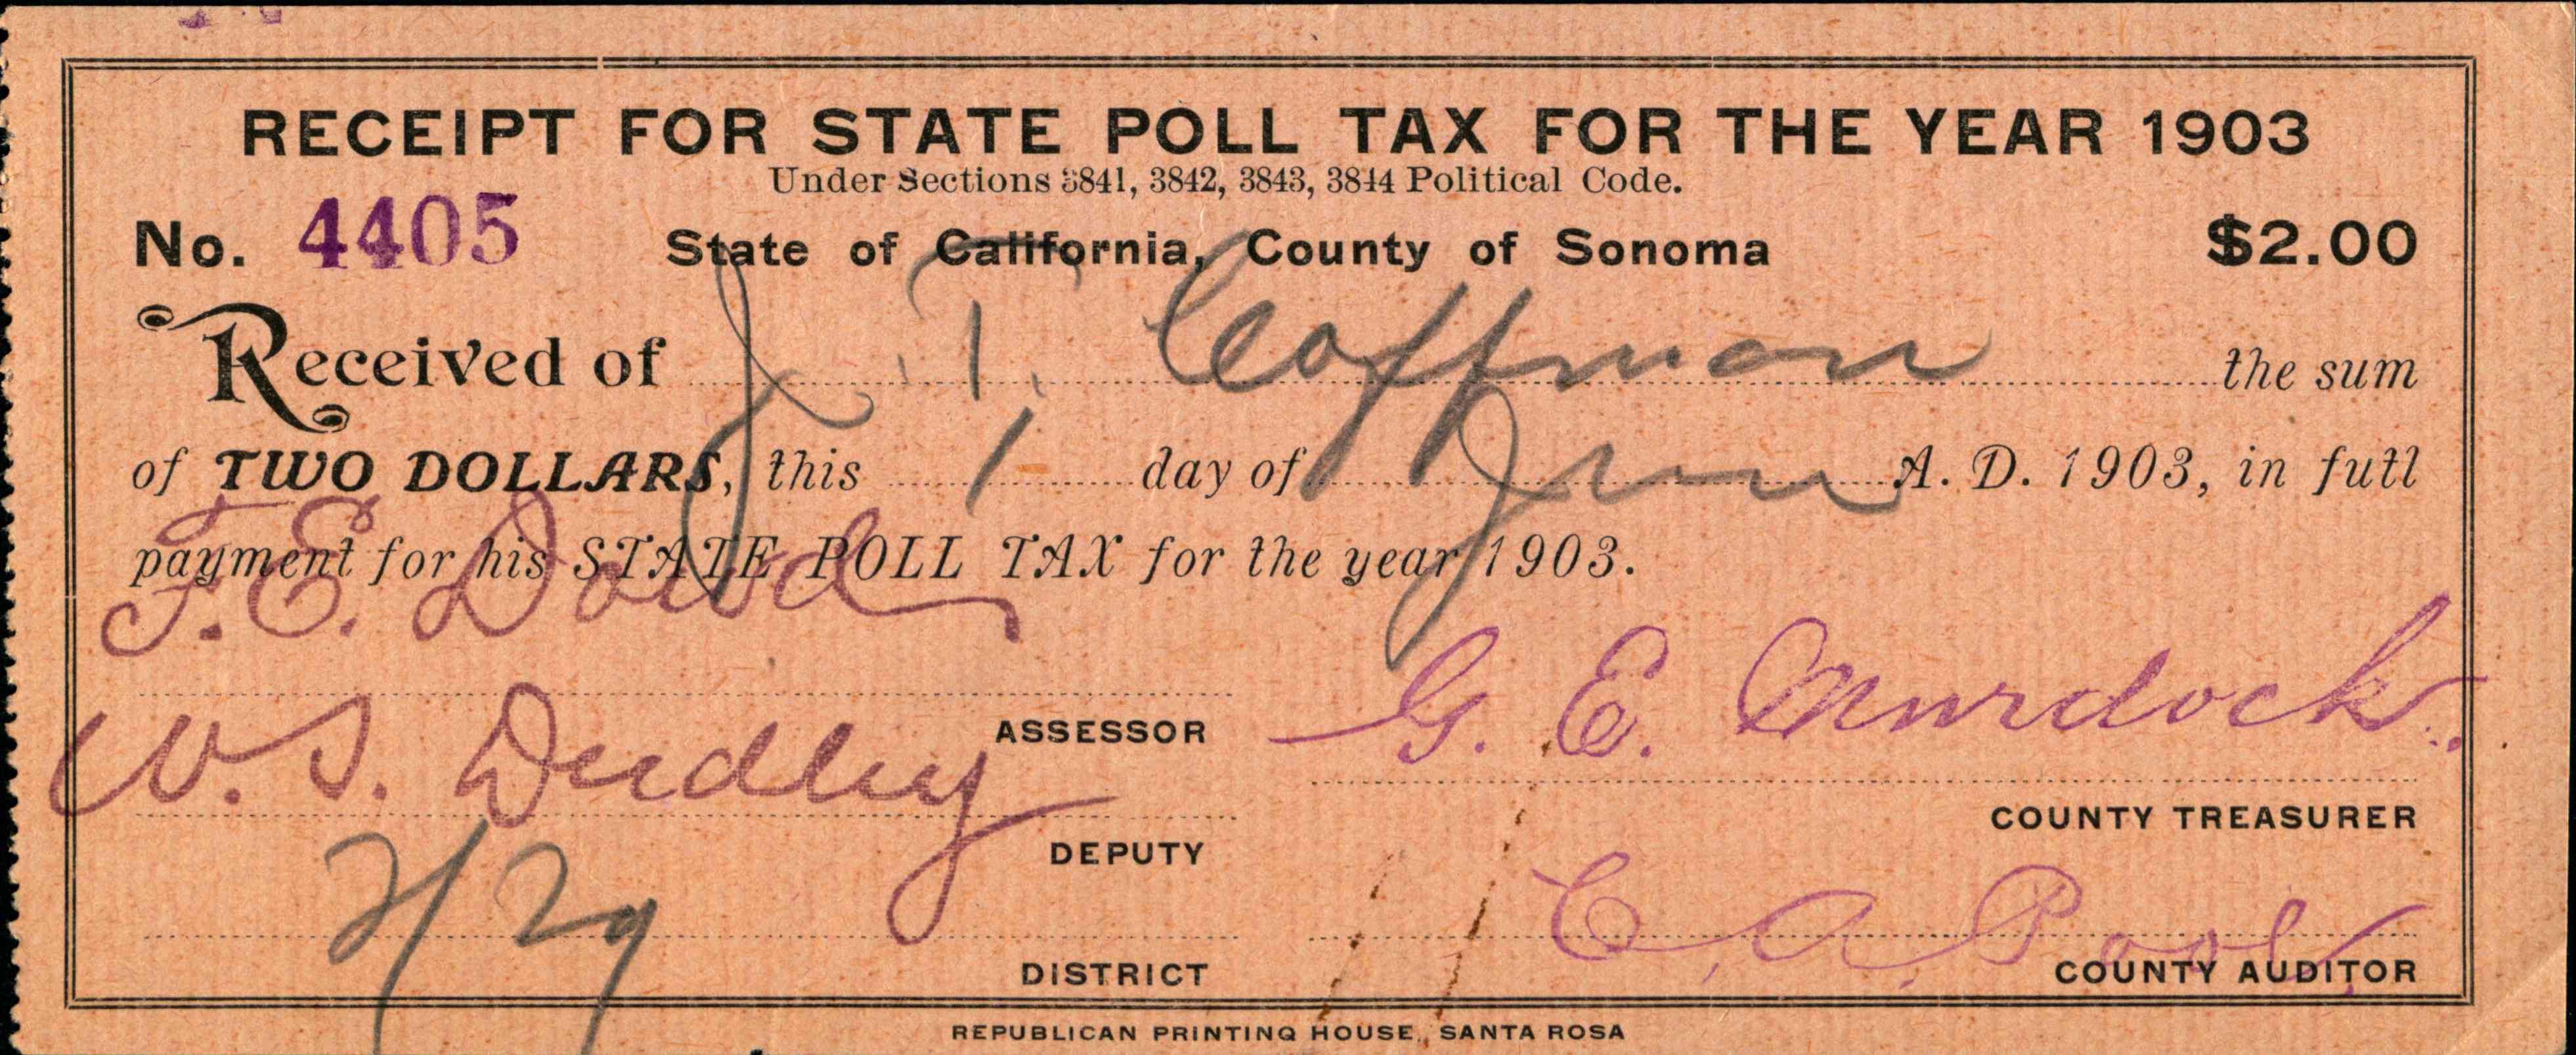 State poll tax receipt